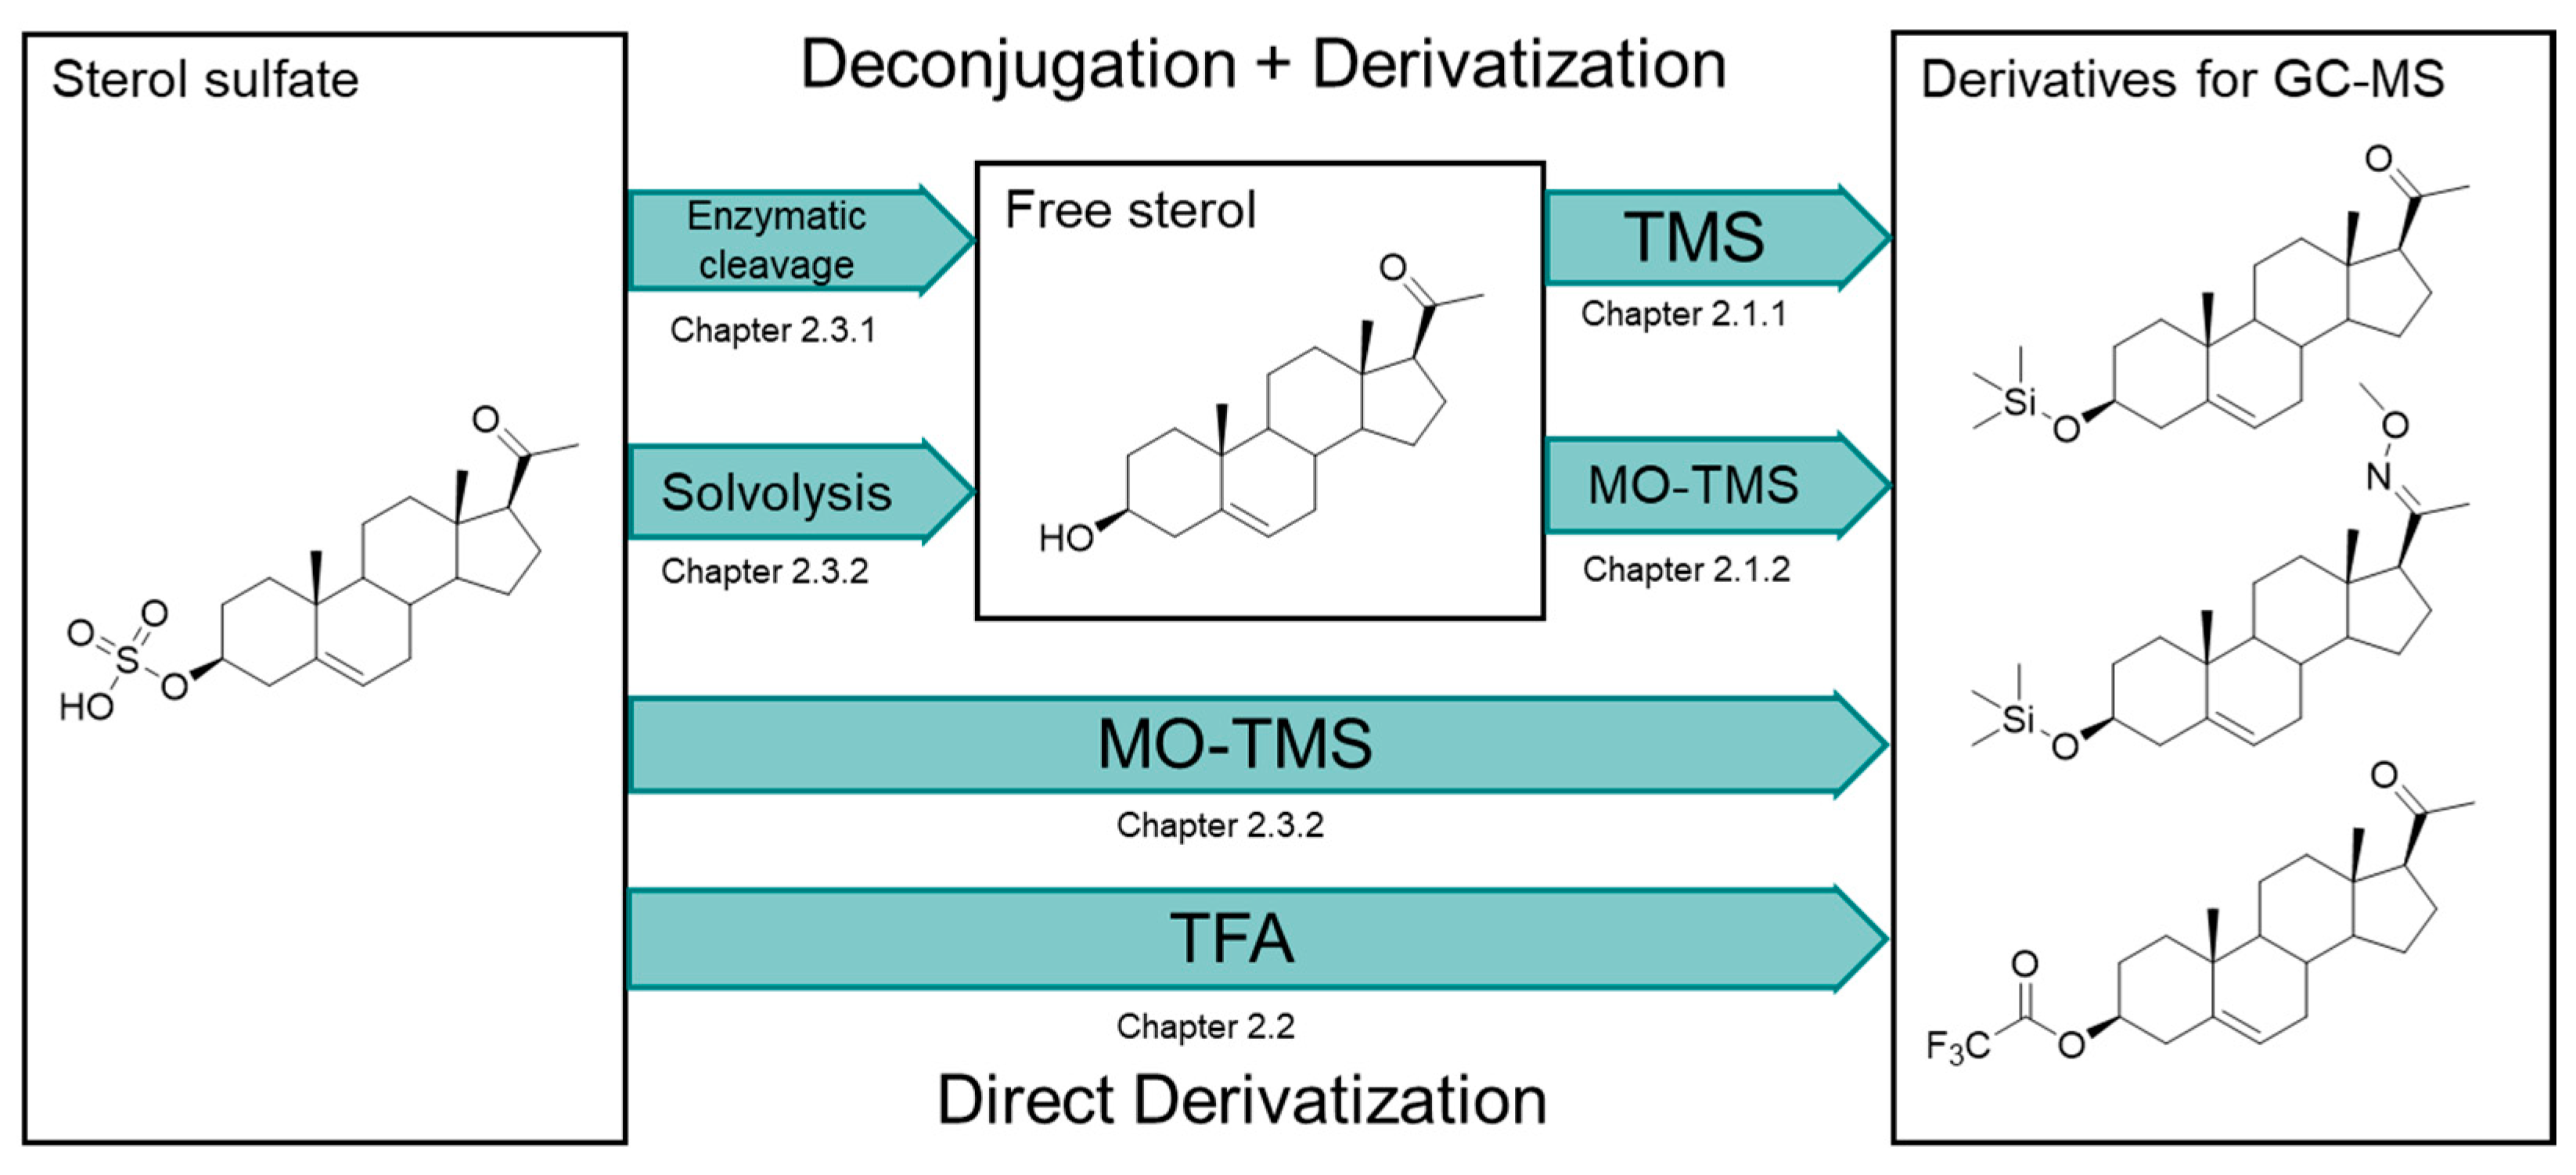 Derivatized versus non-derivatized LC-MS/MS techniques for the